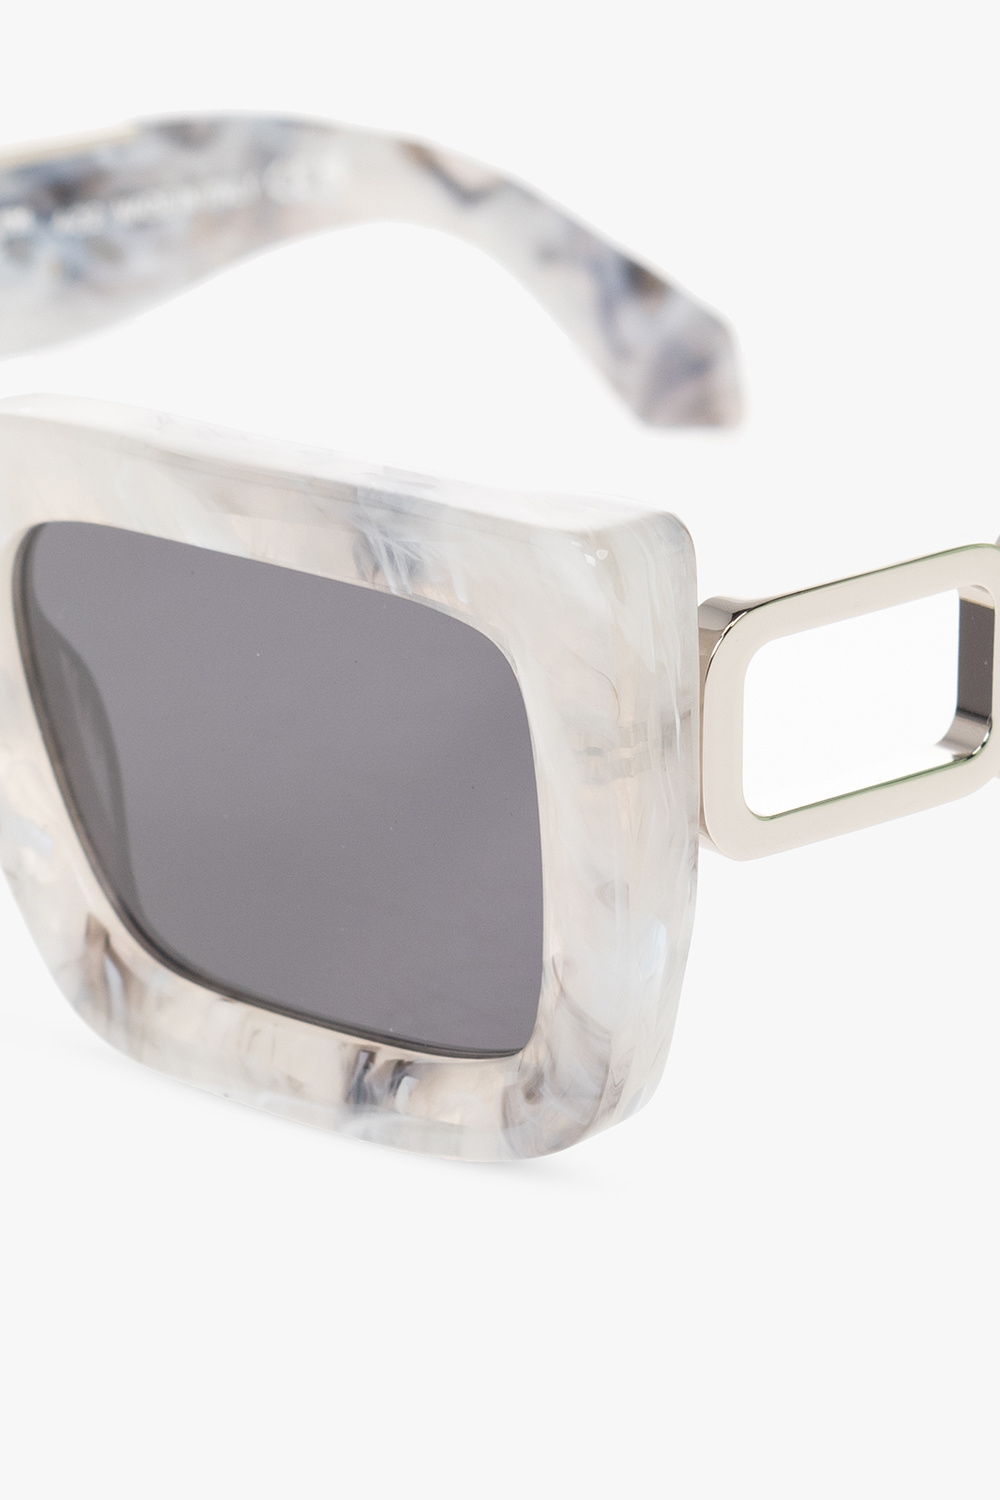 Off-White 'Boston' sunglasses, Men's Accessorie